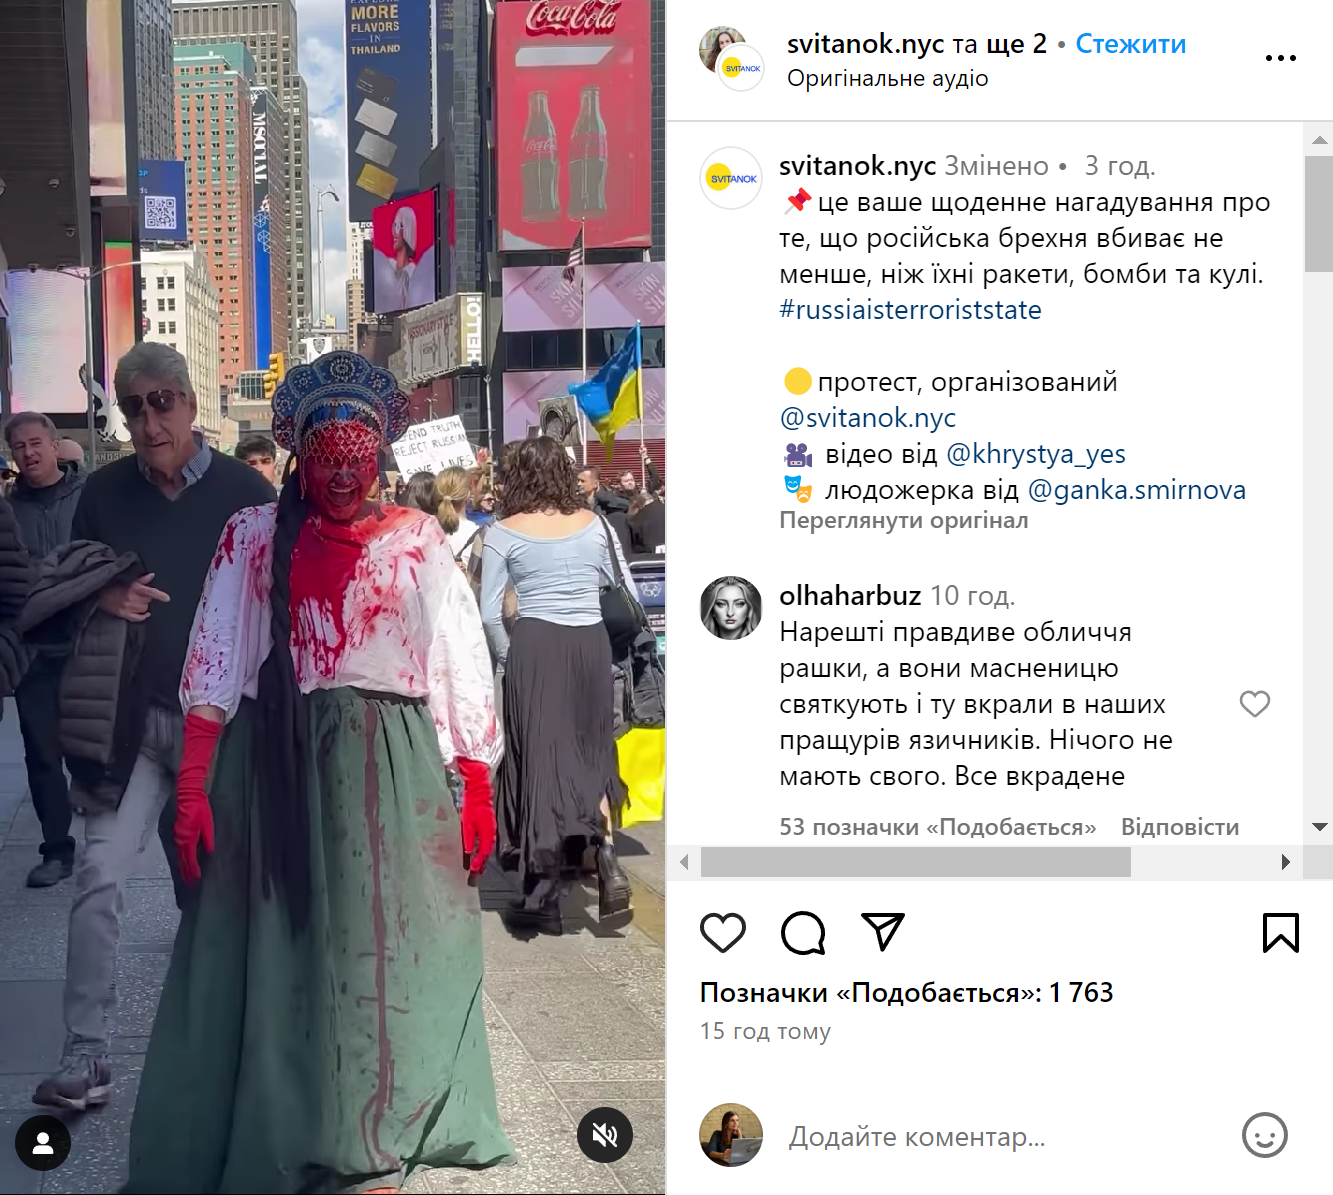 "Пропаганда убивает!" Россияне устроили в Нью-Йорке празднование Масленицы и получили по заслугам от украинской диаспоры. Фото и видео